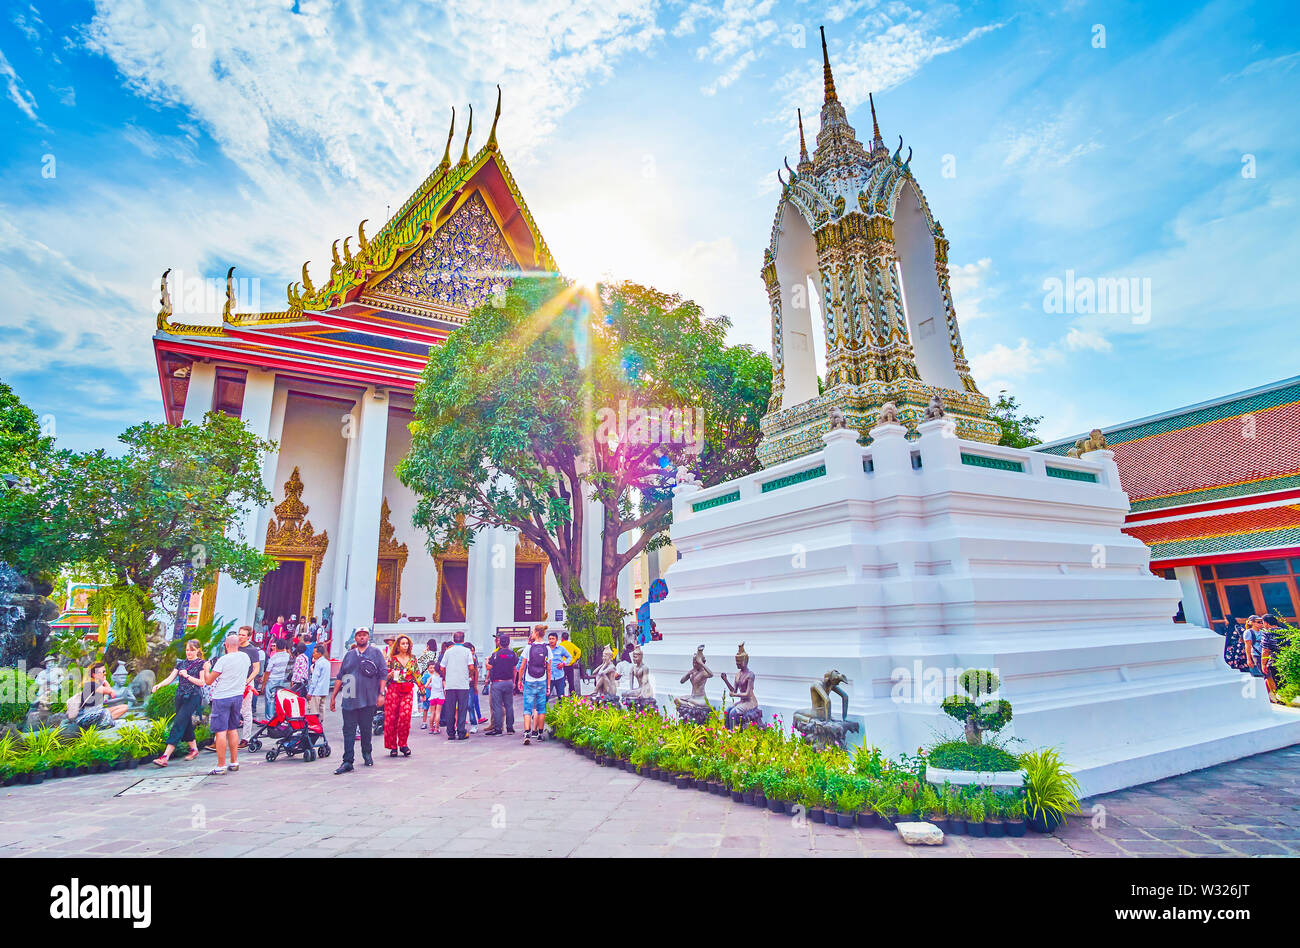 BANGKOK, THAILAND - 22 April, 2019: Herrliche Architektur der Wat Pho religion Komplex mit seinen einzigartigen Fliesen- Dekorationen zieht Touristen an, am 22. April Stockfoto